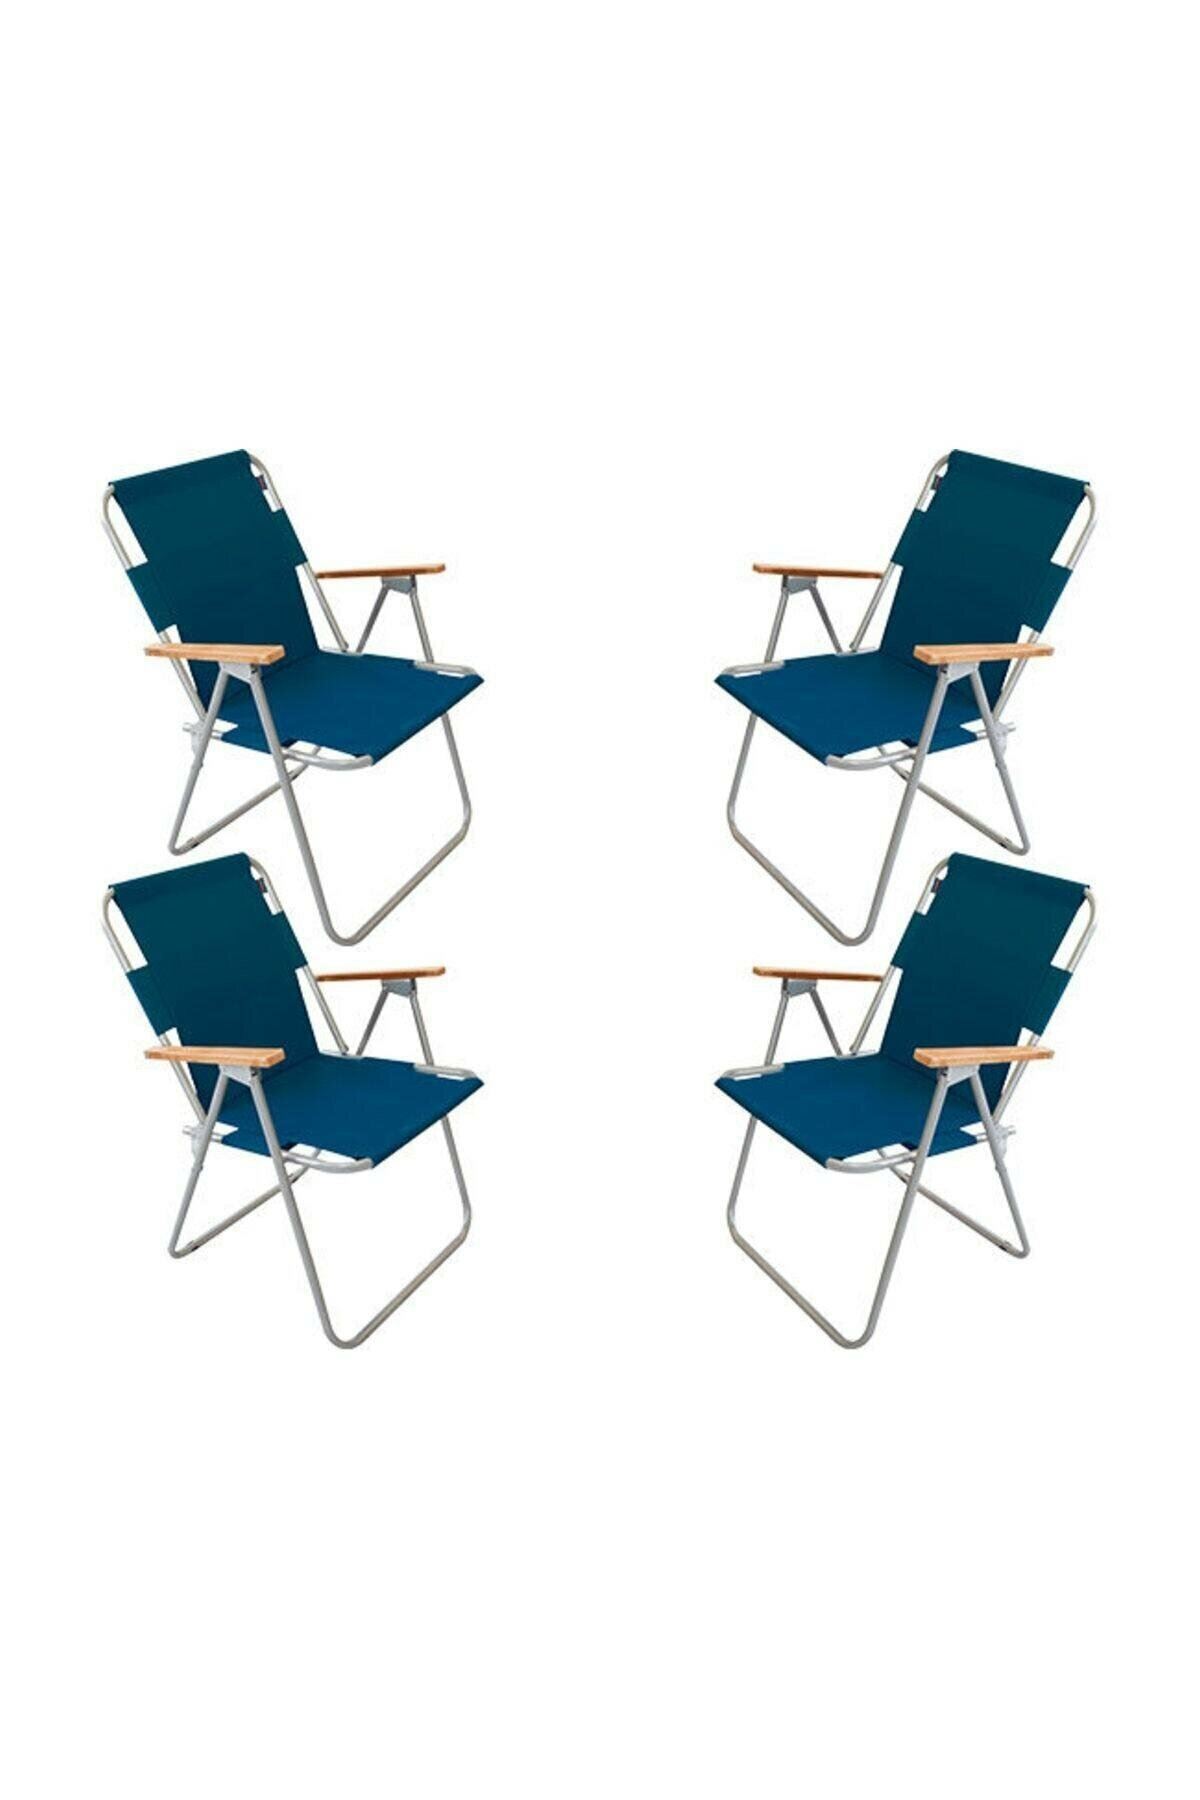 Bofigo 60x80 Pine Folding Table + 4 Pieces Folding Chair Camping Set Garden Balcony Set Blue